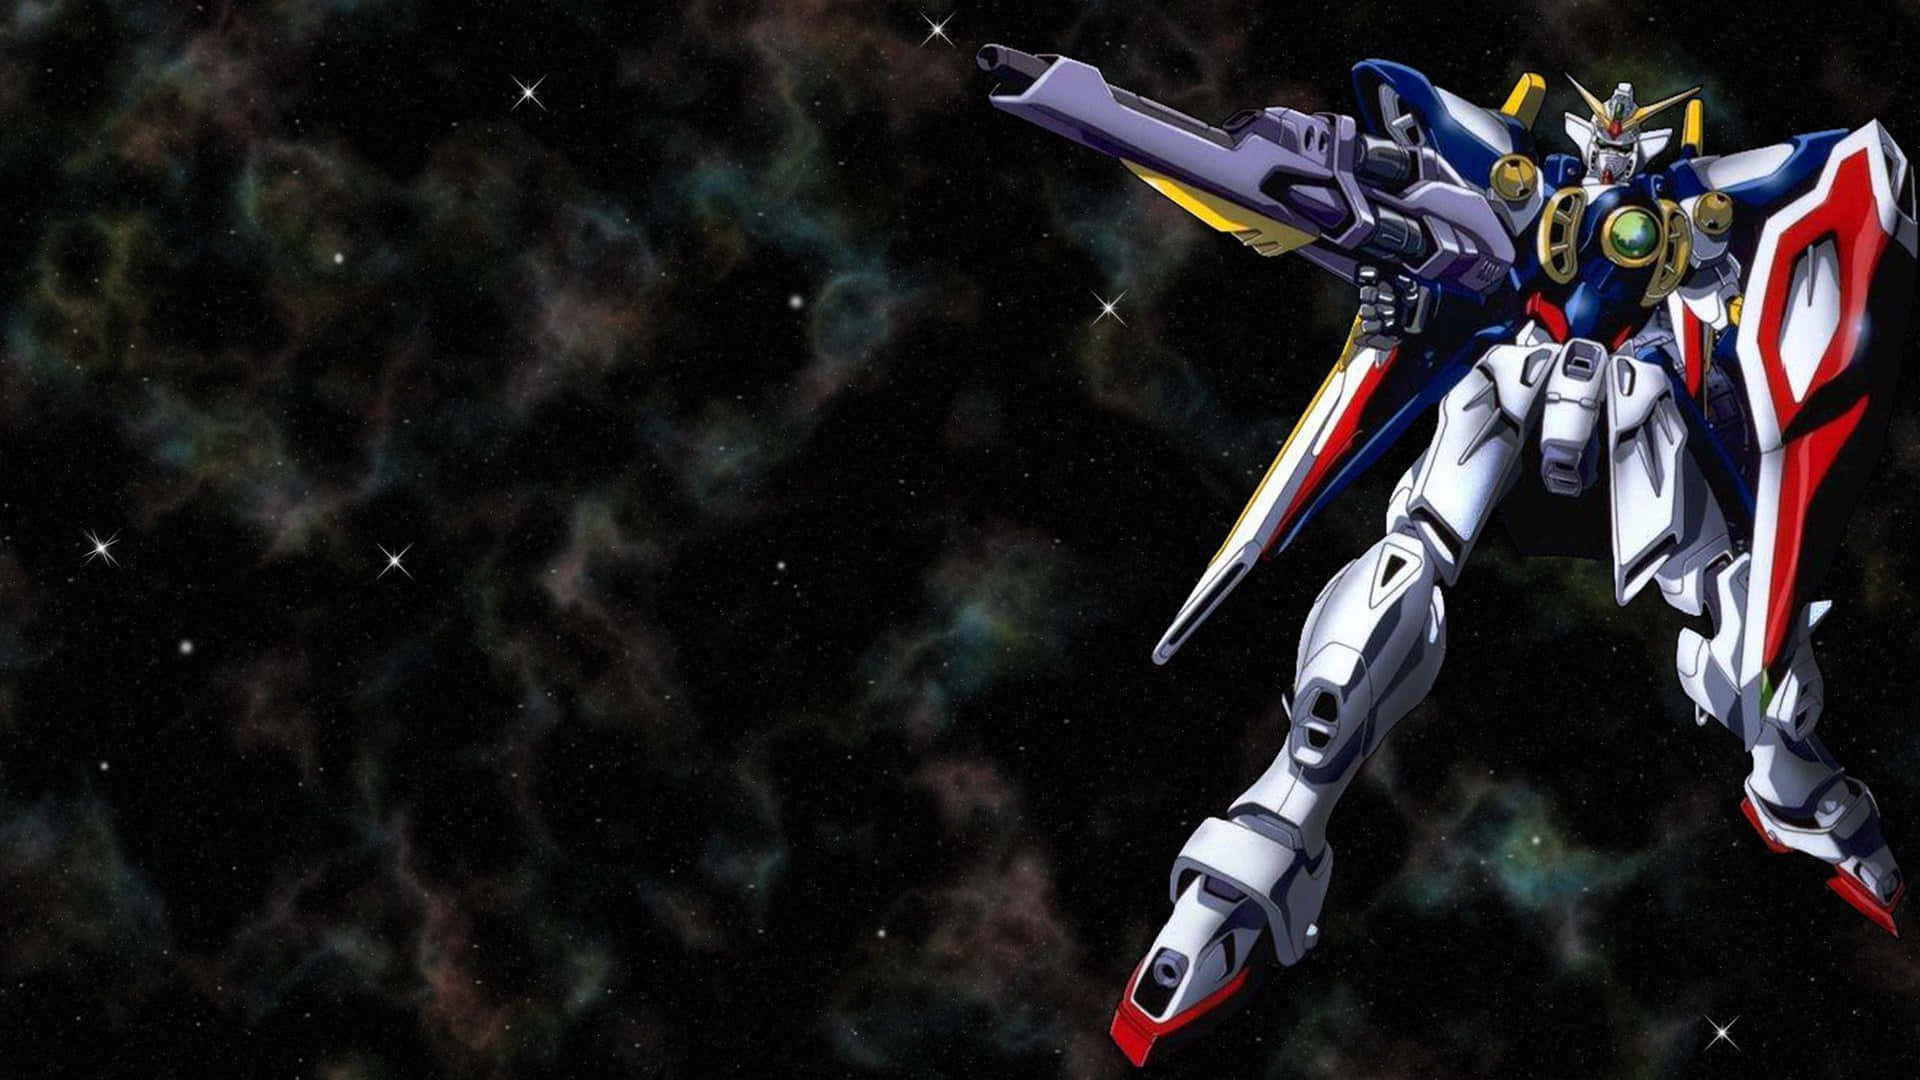 Tauchensie Ein In Die Welt Von Gundam 4k Wallpaper